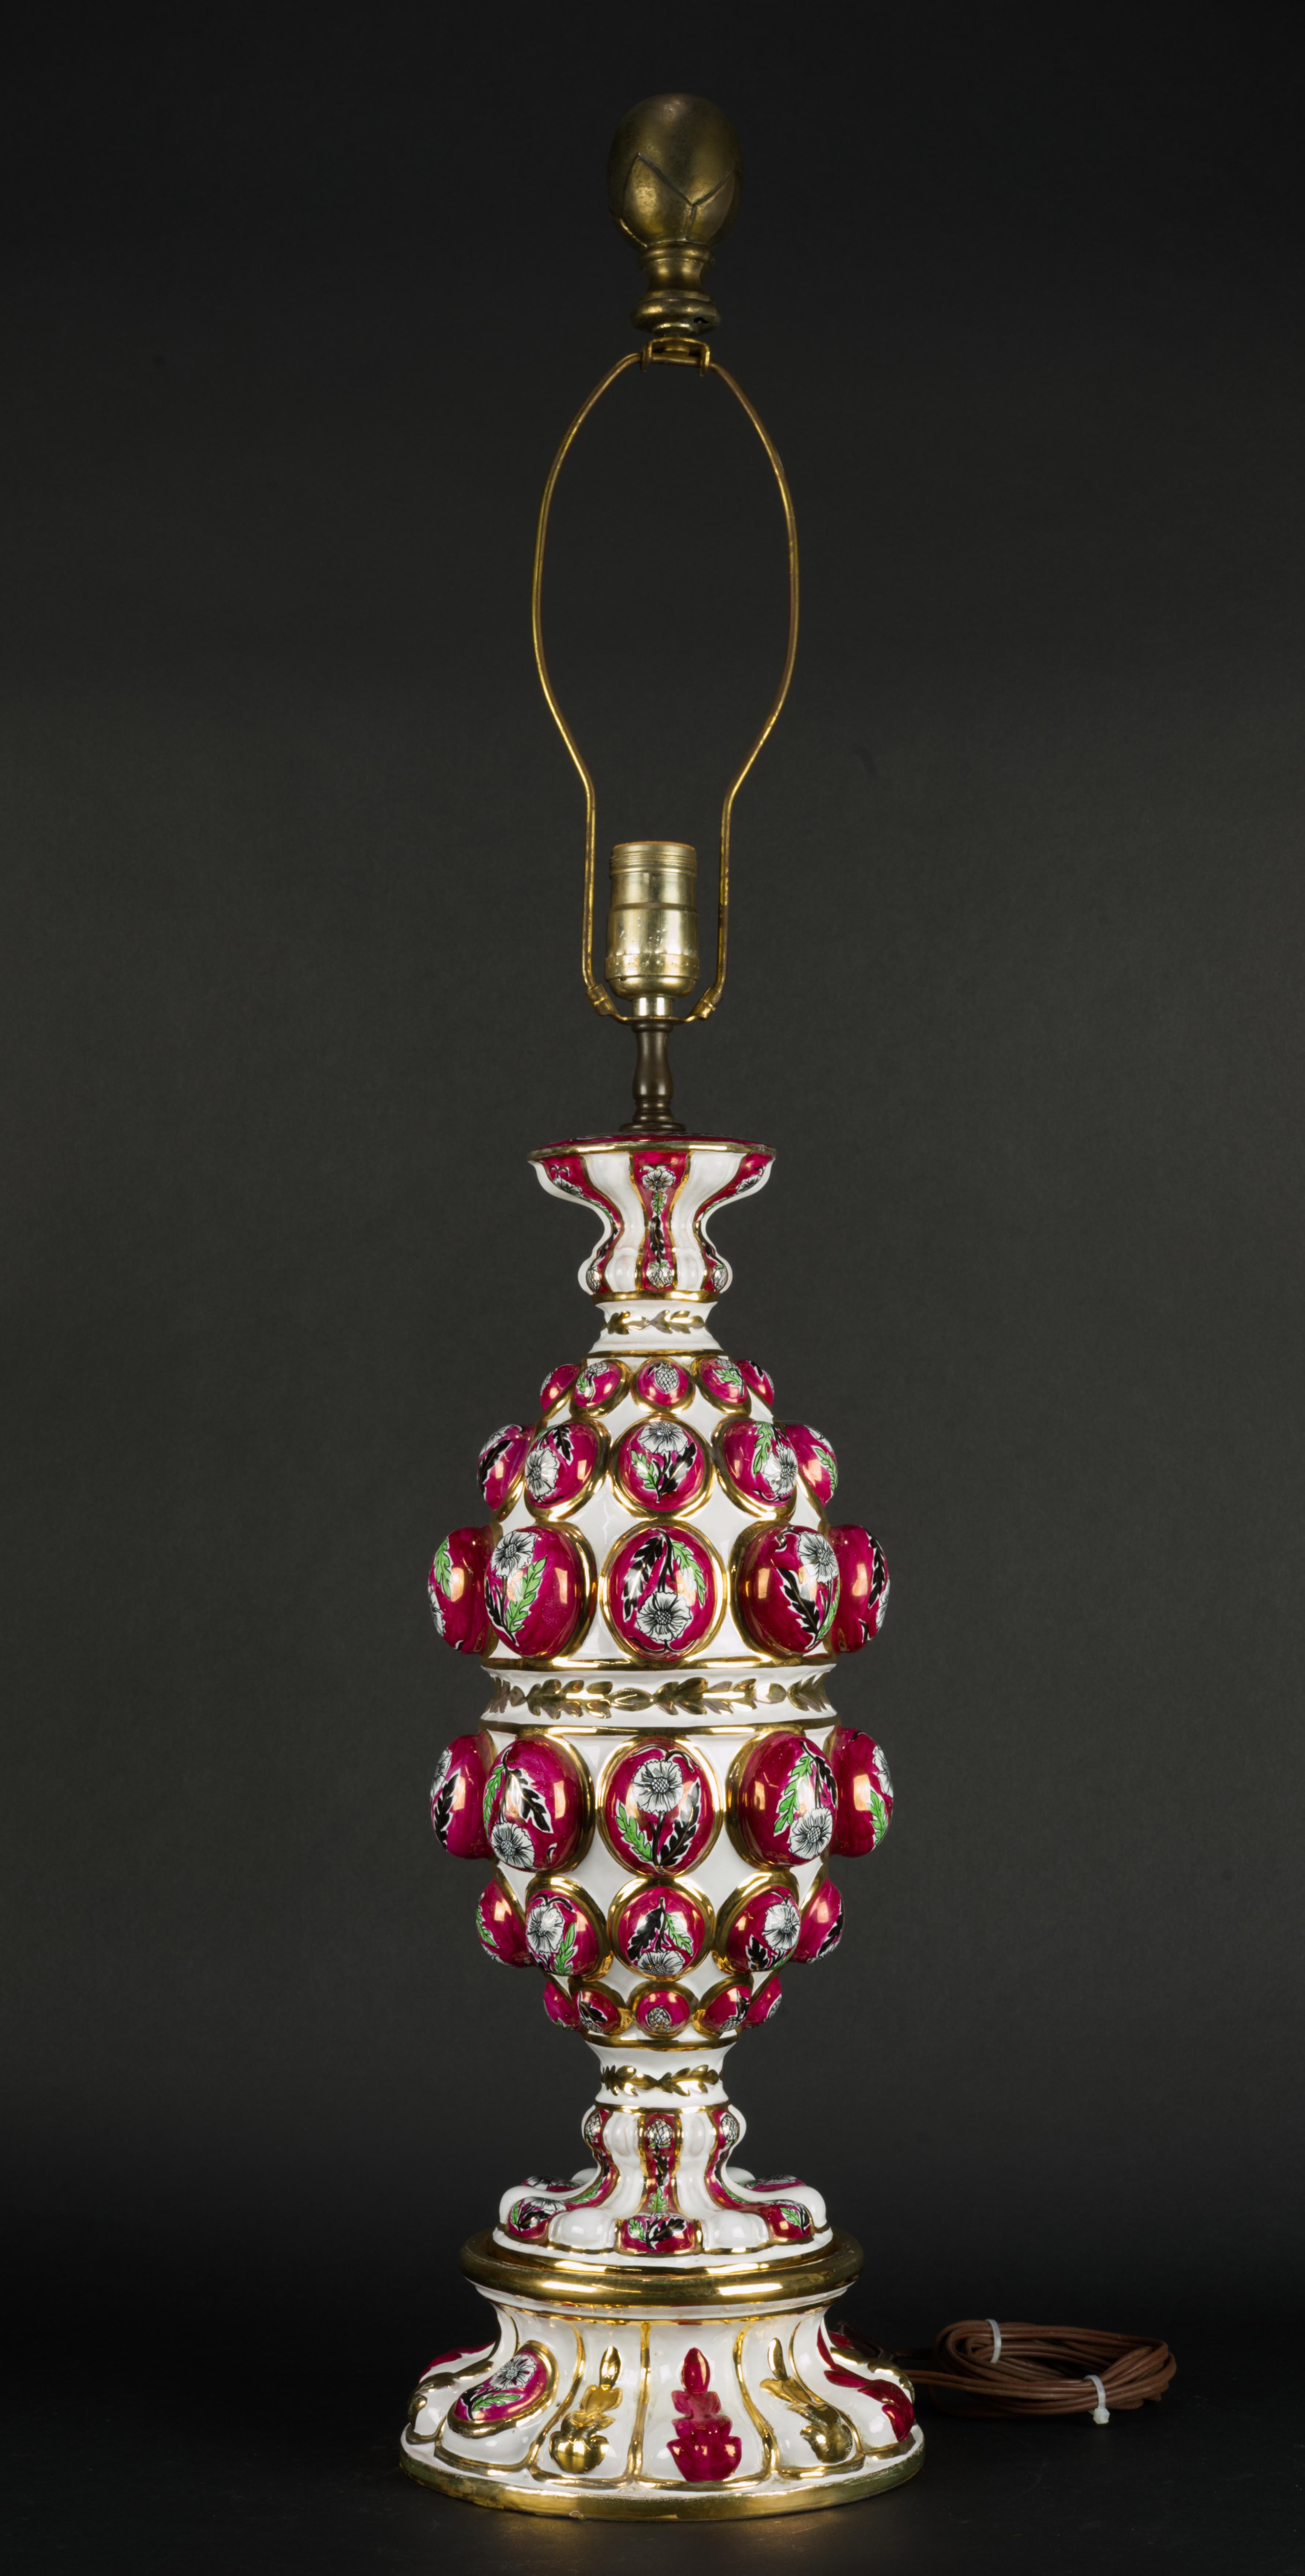  Die seltene Majolika-Tischlampe wurde in Italien von Cantagalli für Ardalt Importing handgefertigt. Sie wurde von Hand bemalt und mit Cantagallis berühmter Daliso-Lustro-Glasur veredelt. Es ist ein beeindruckendes Beispiel für traditionelles